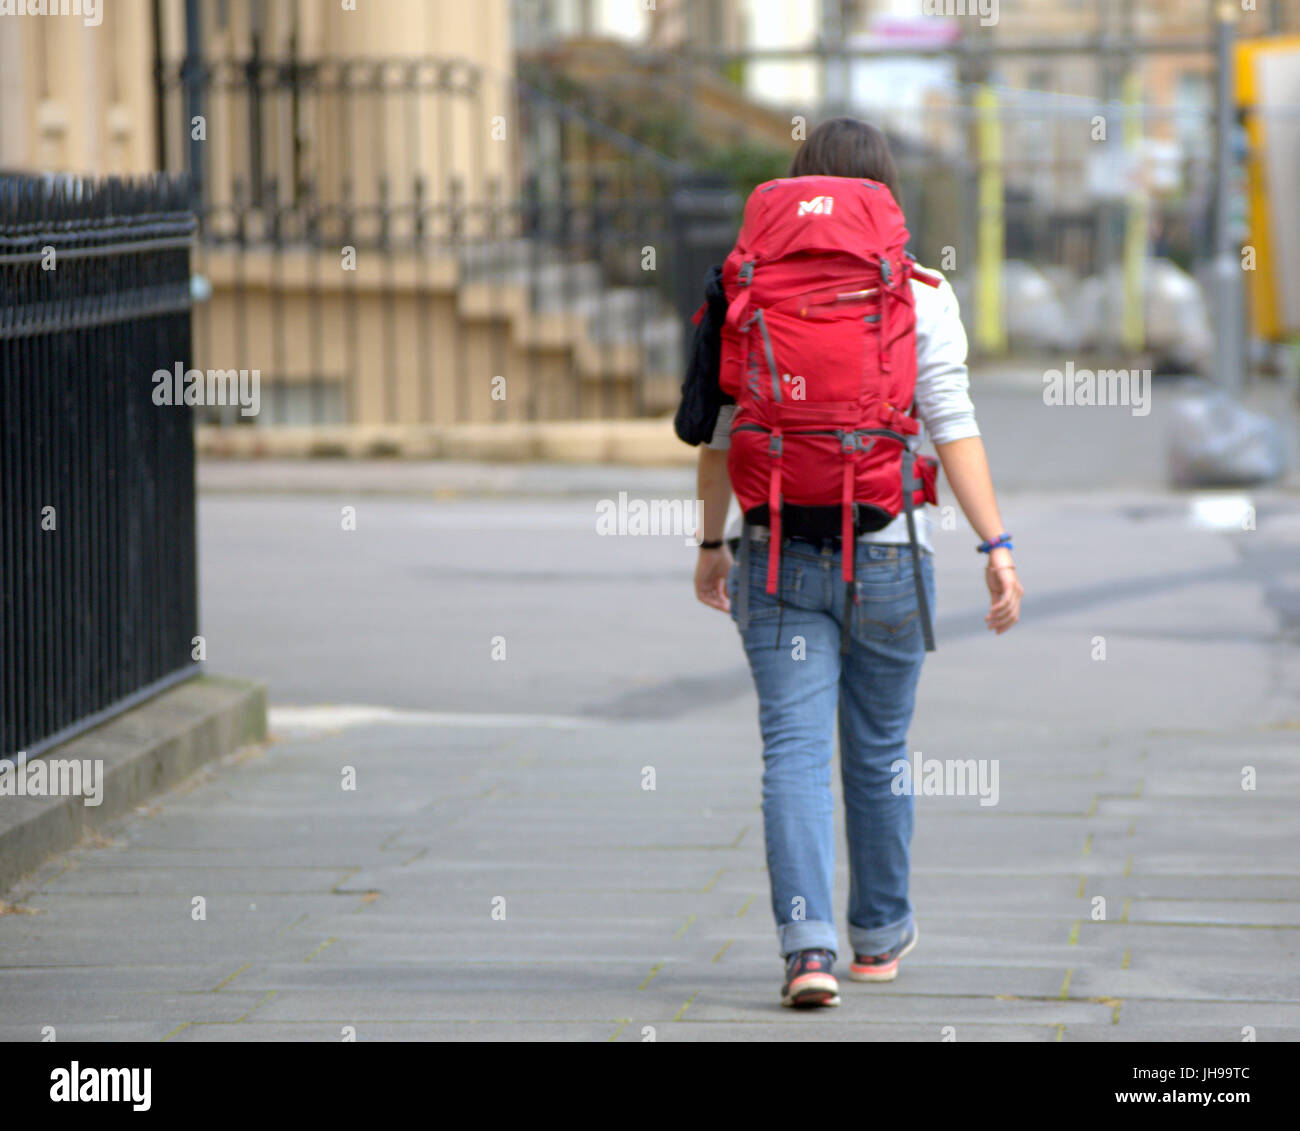 Park Circus Glasgow jeune fille qui marche sur la rue touristique voyageur avec sac à dos de derrière Banque D'Images